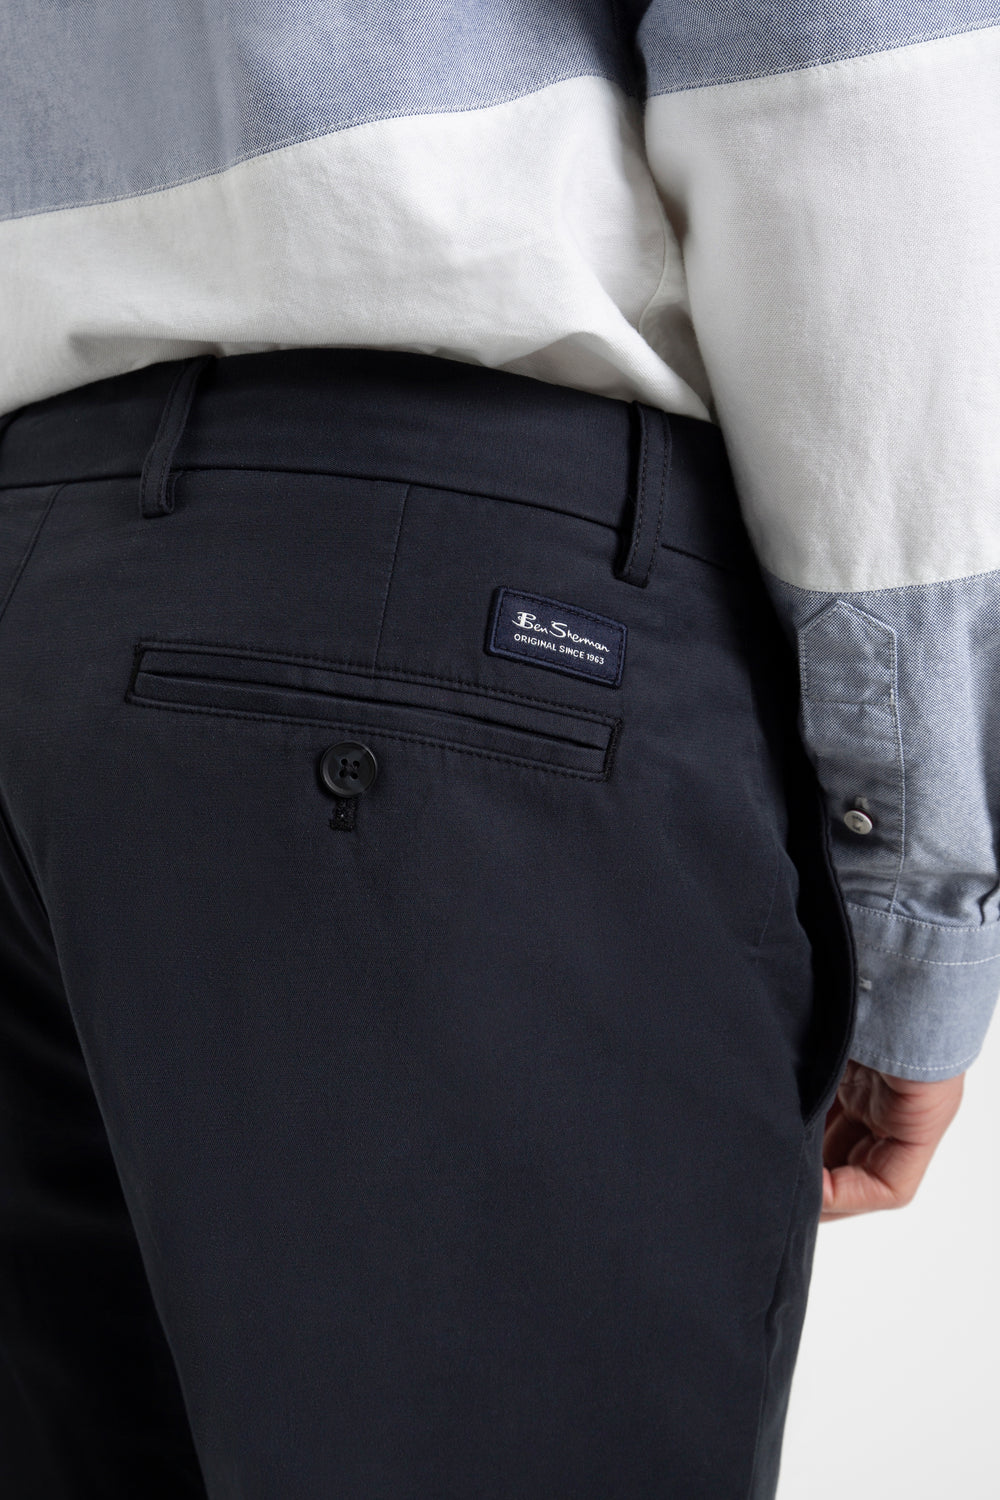 Buy Beige Trousers  Pants for Men by Ben Sherman Online  Ajiocom